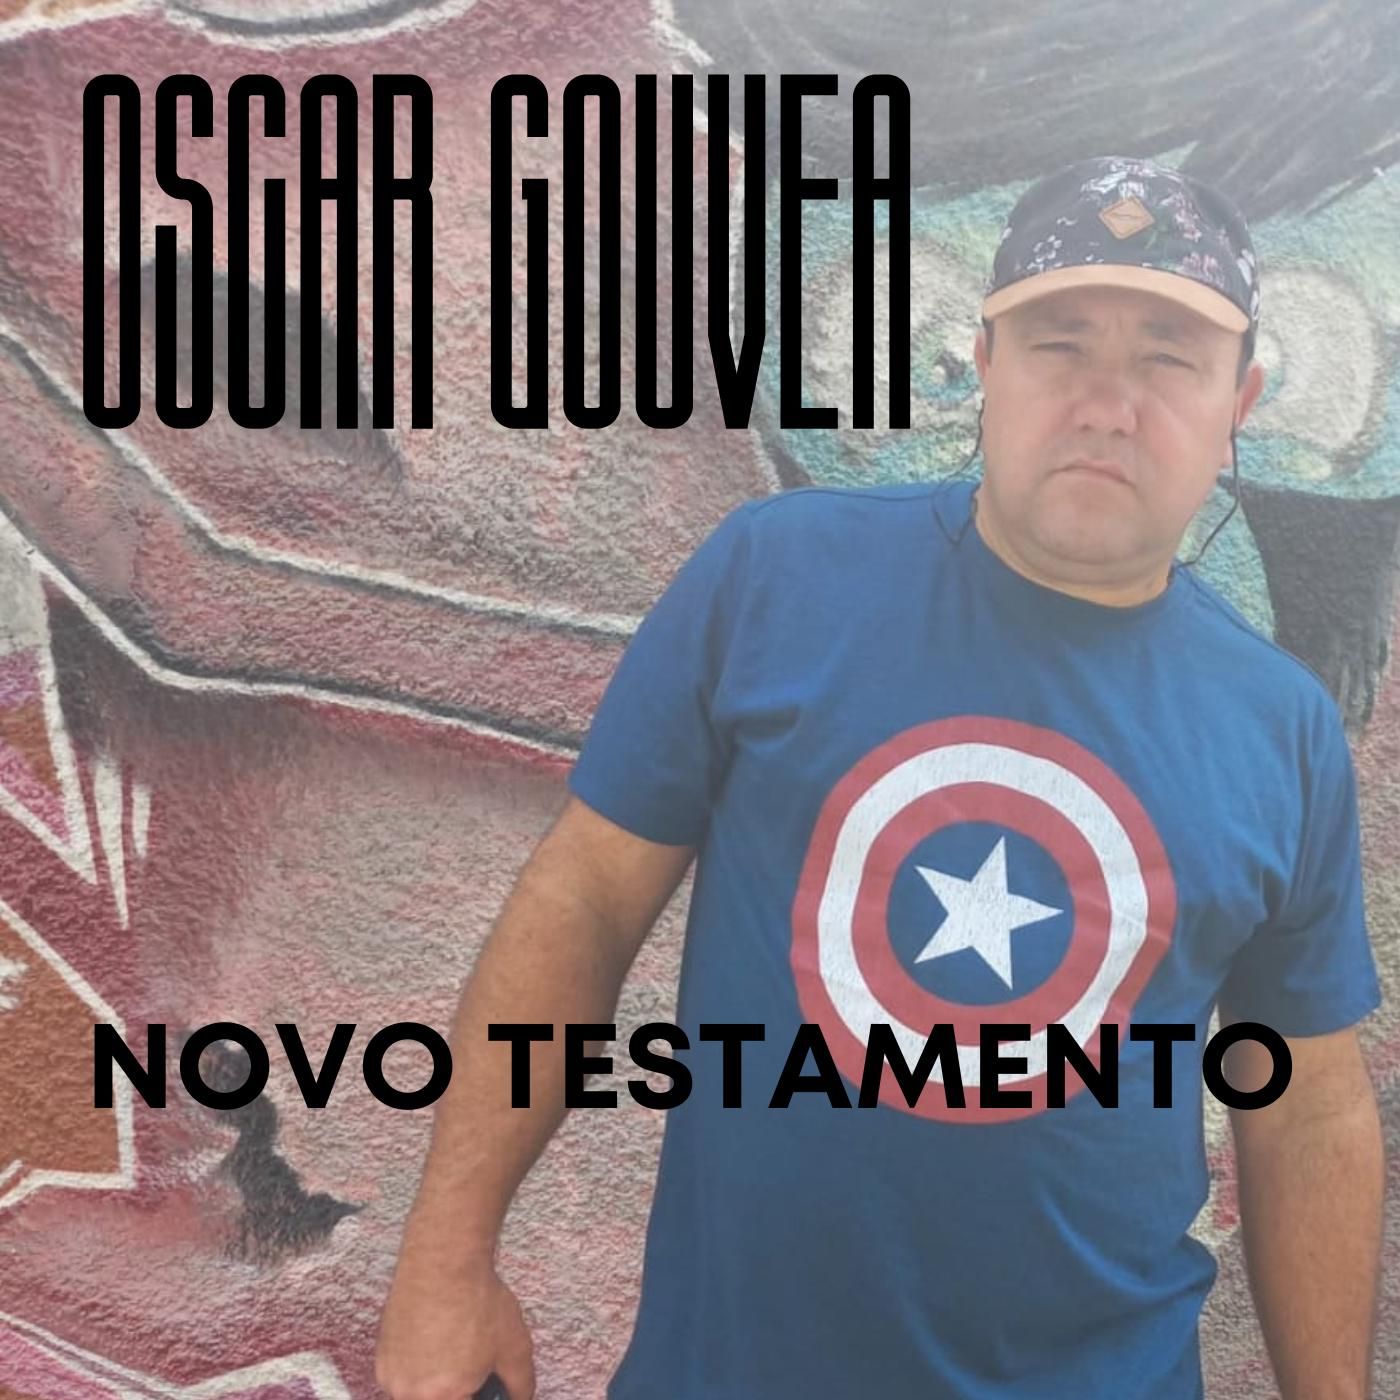 Oscar Gouvea